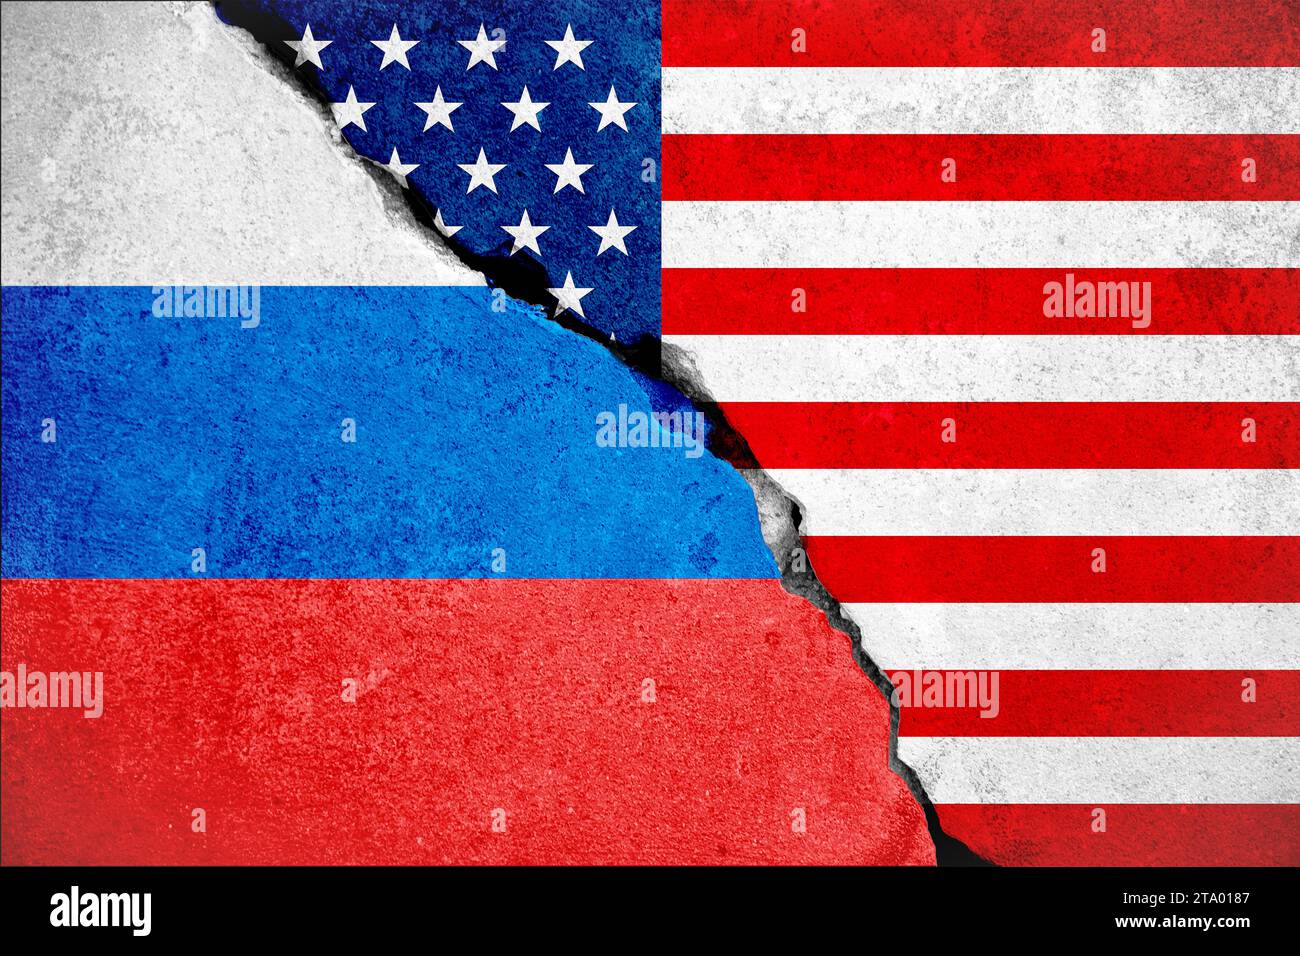 us-amerikanische Flagge auf zerbrochener Schadenswand und halb russische weiße rote blaue Flagge, Beziehungskrise zwischen russland und usa Konzept Stockfoto